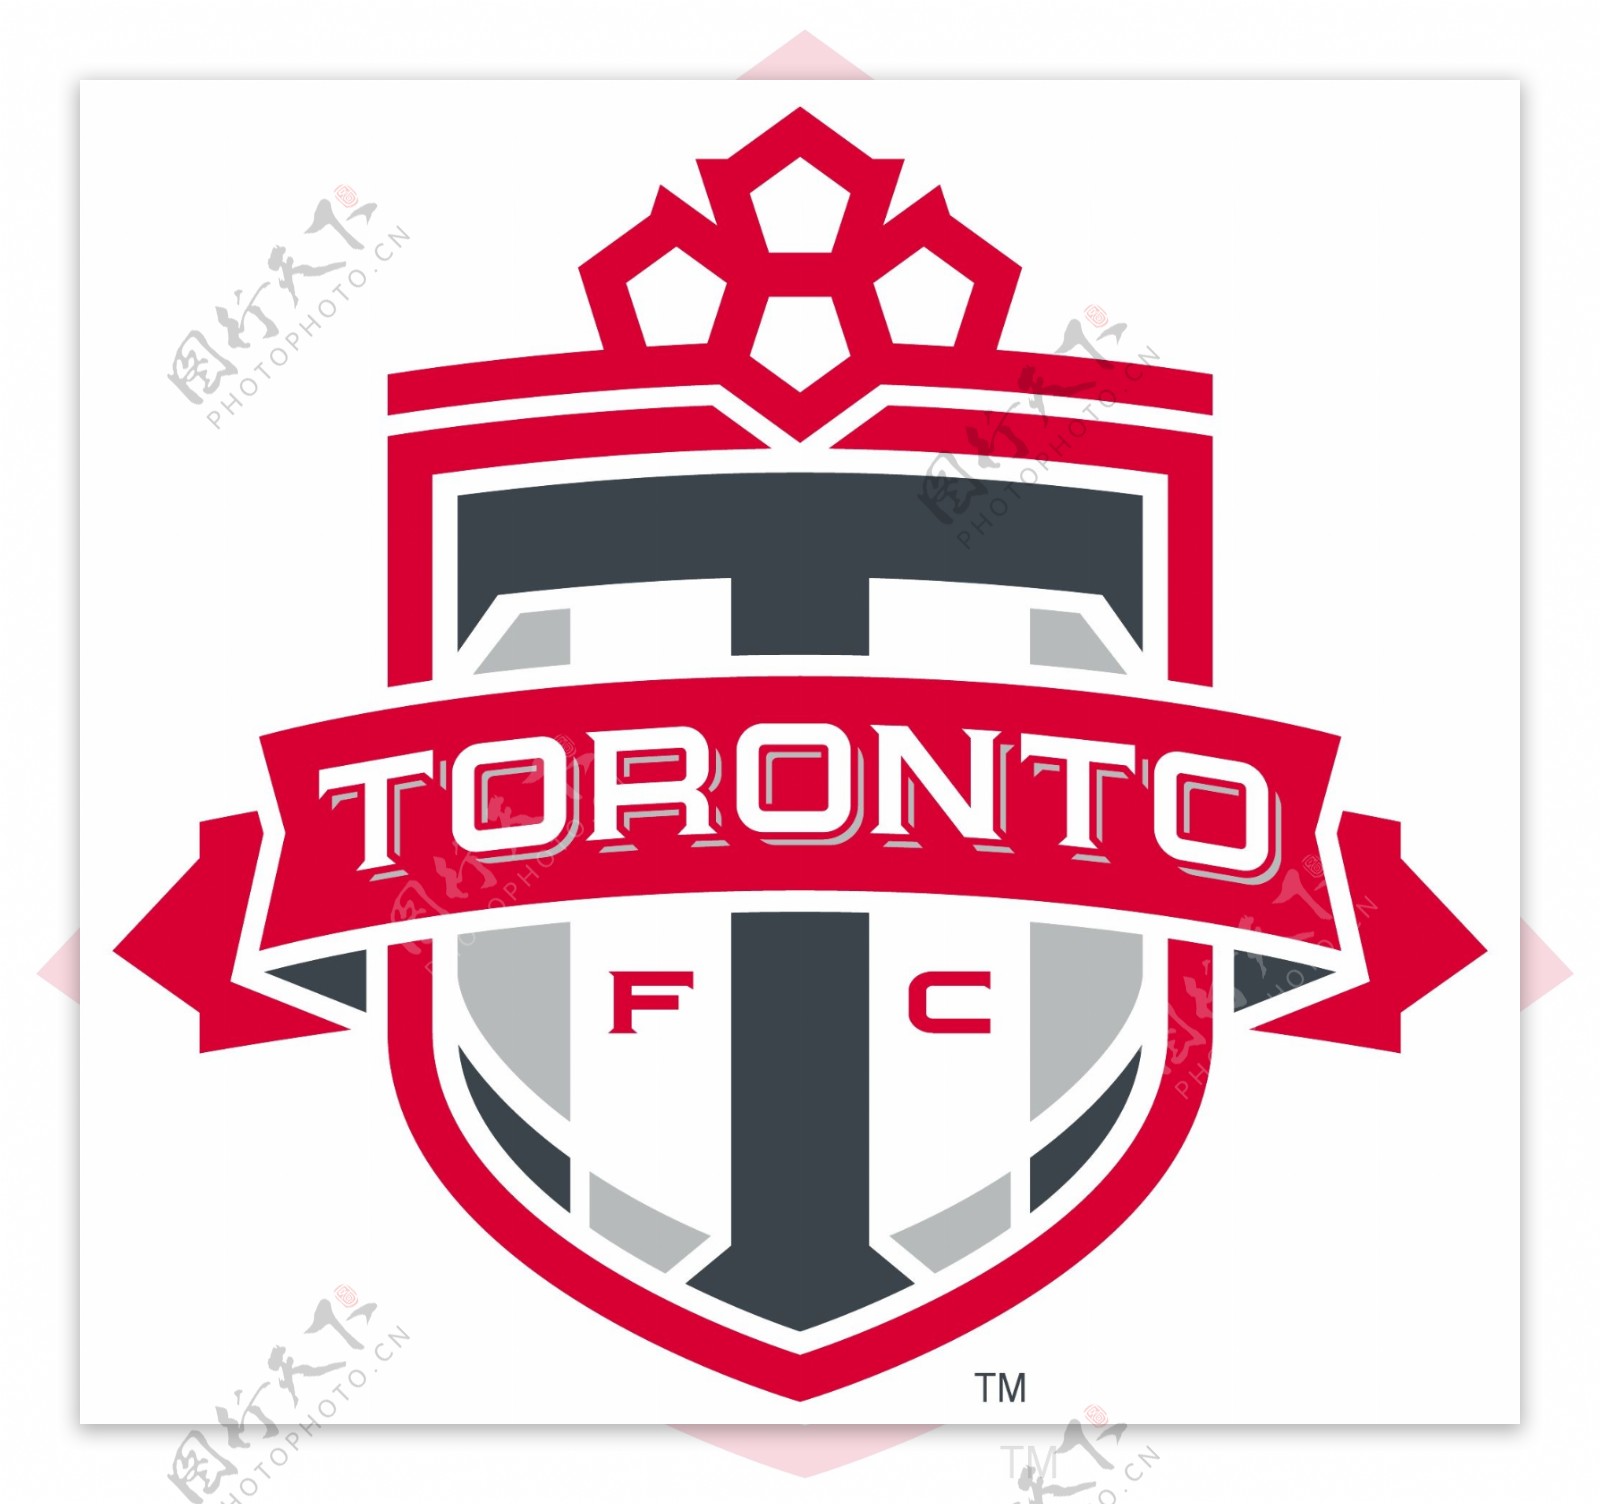 多伦多足球俱乐部徽标图片